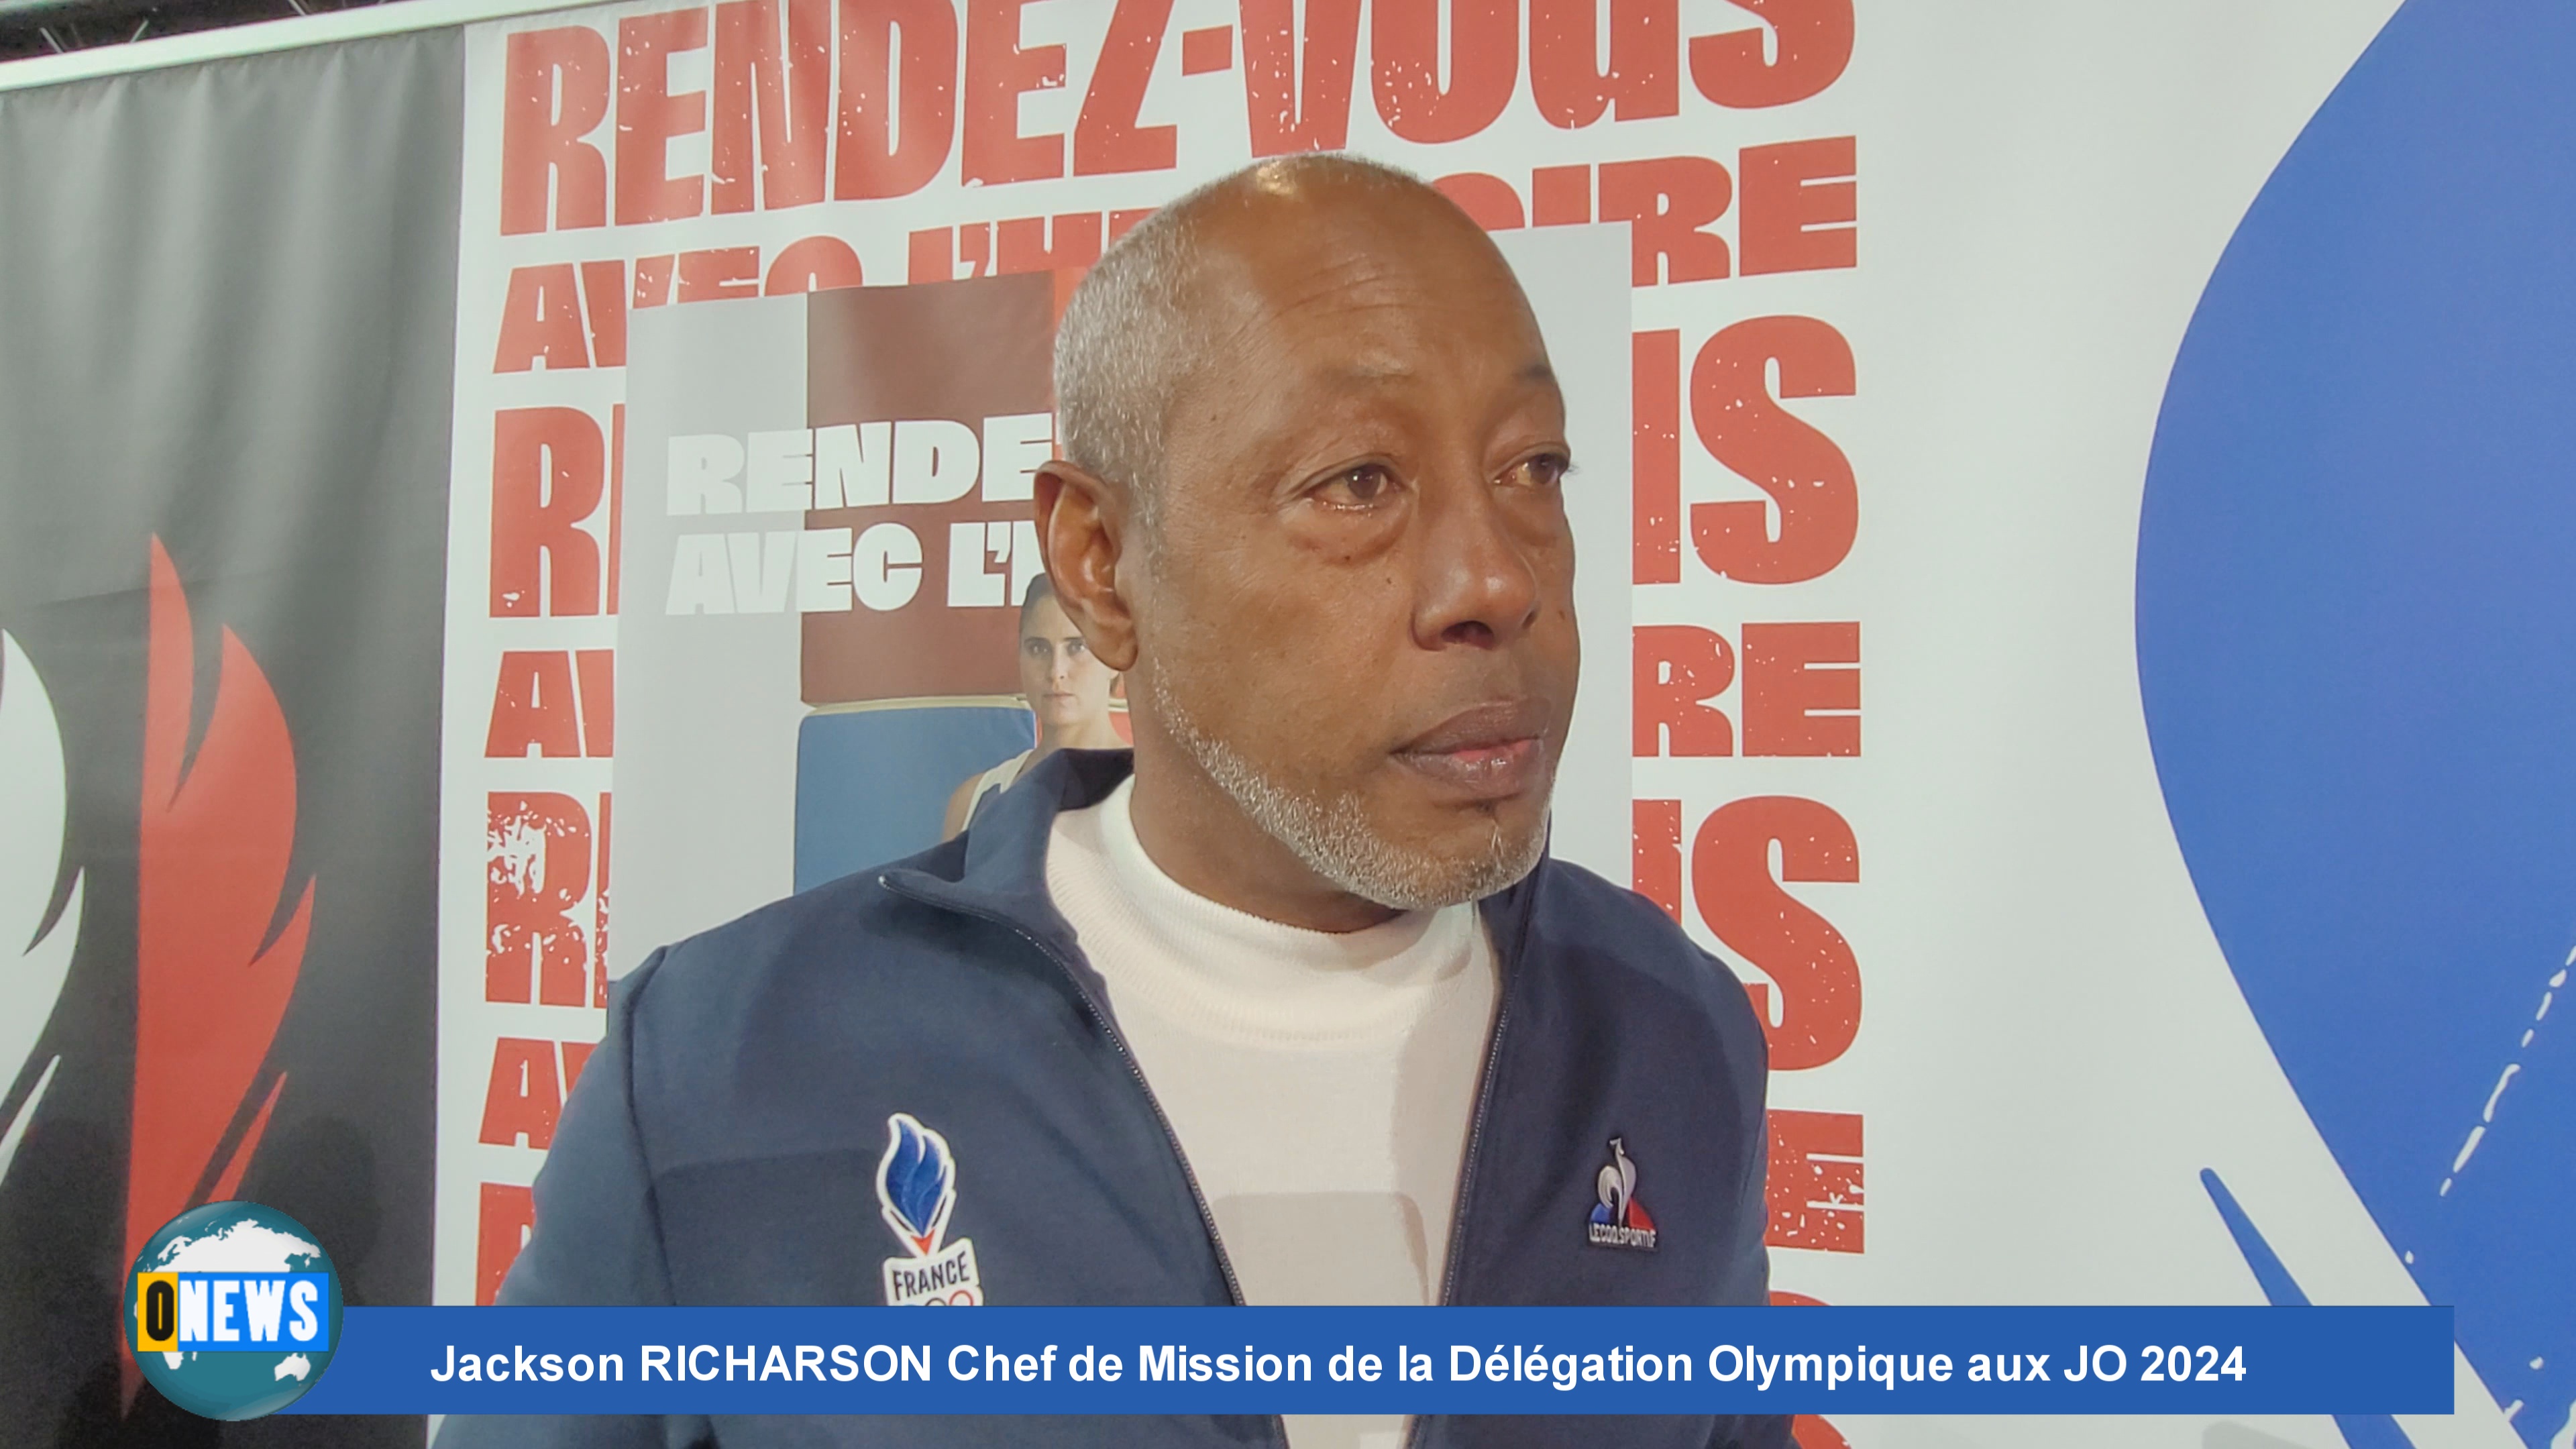 Interview de Jackson RICHARSON Chef de Mission de la Délégation Olympique aux JO 2024